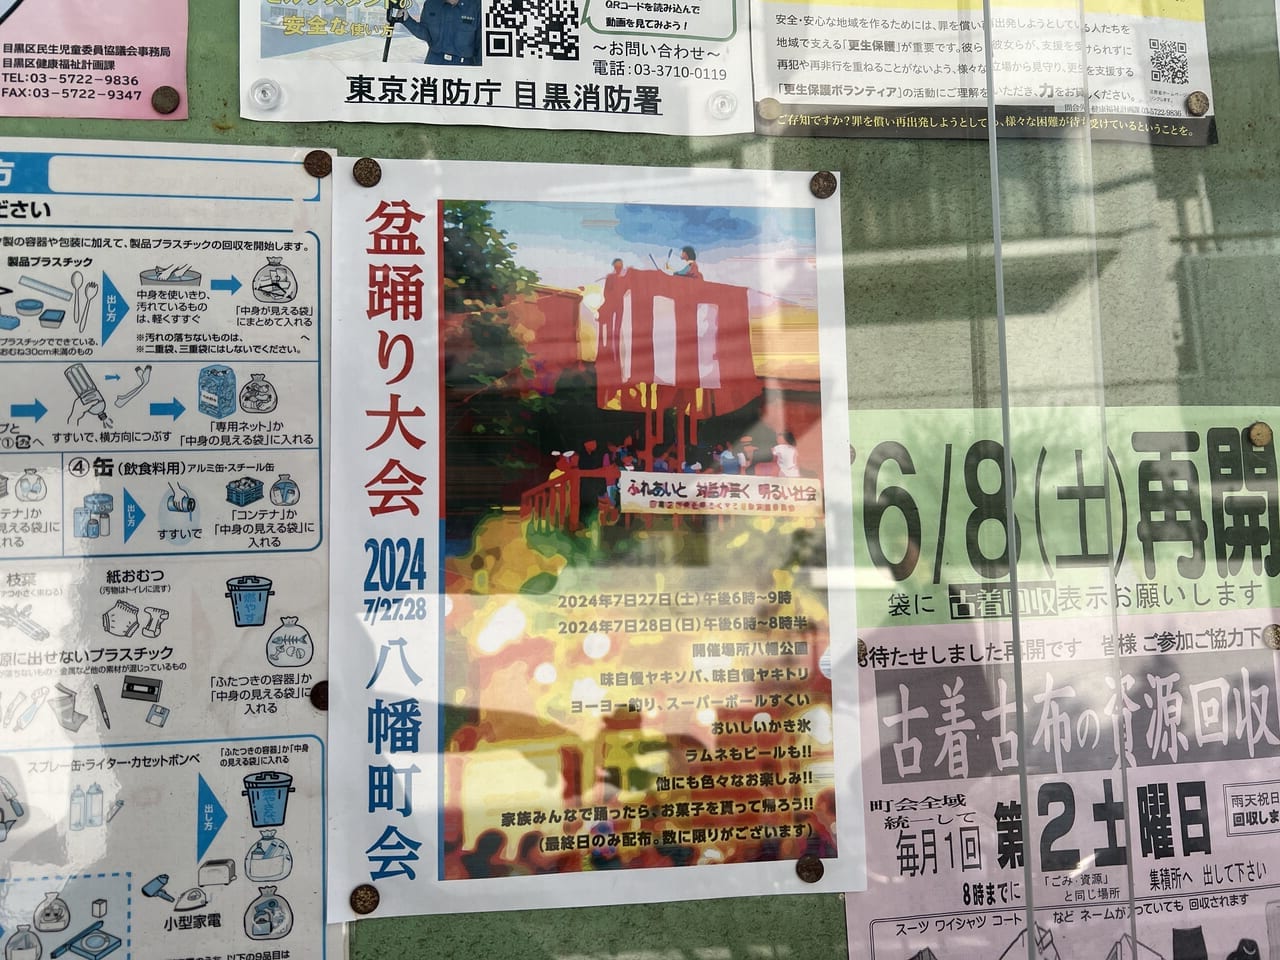 八幡公園で開催される盆踊り大会ポスター